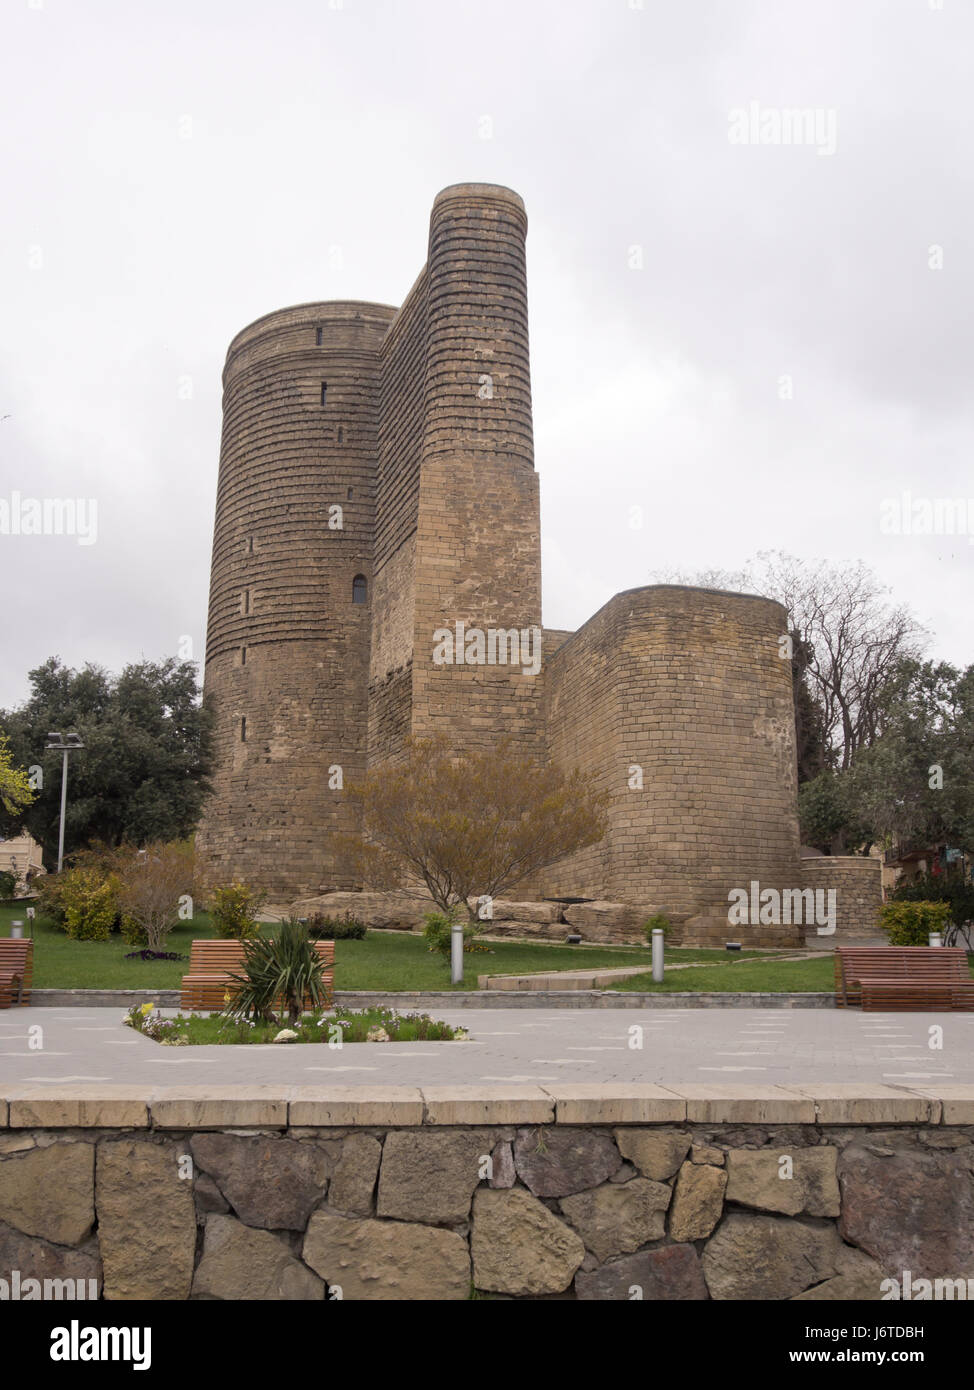 La fanciulla torre a Baku old town, Icheri sheher, area nella parte interna della città circondata da mura di fortificazione, un sito Patrimonio Mondiale dell'Unesco Foto Stock